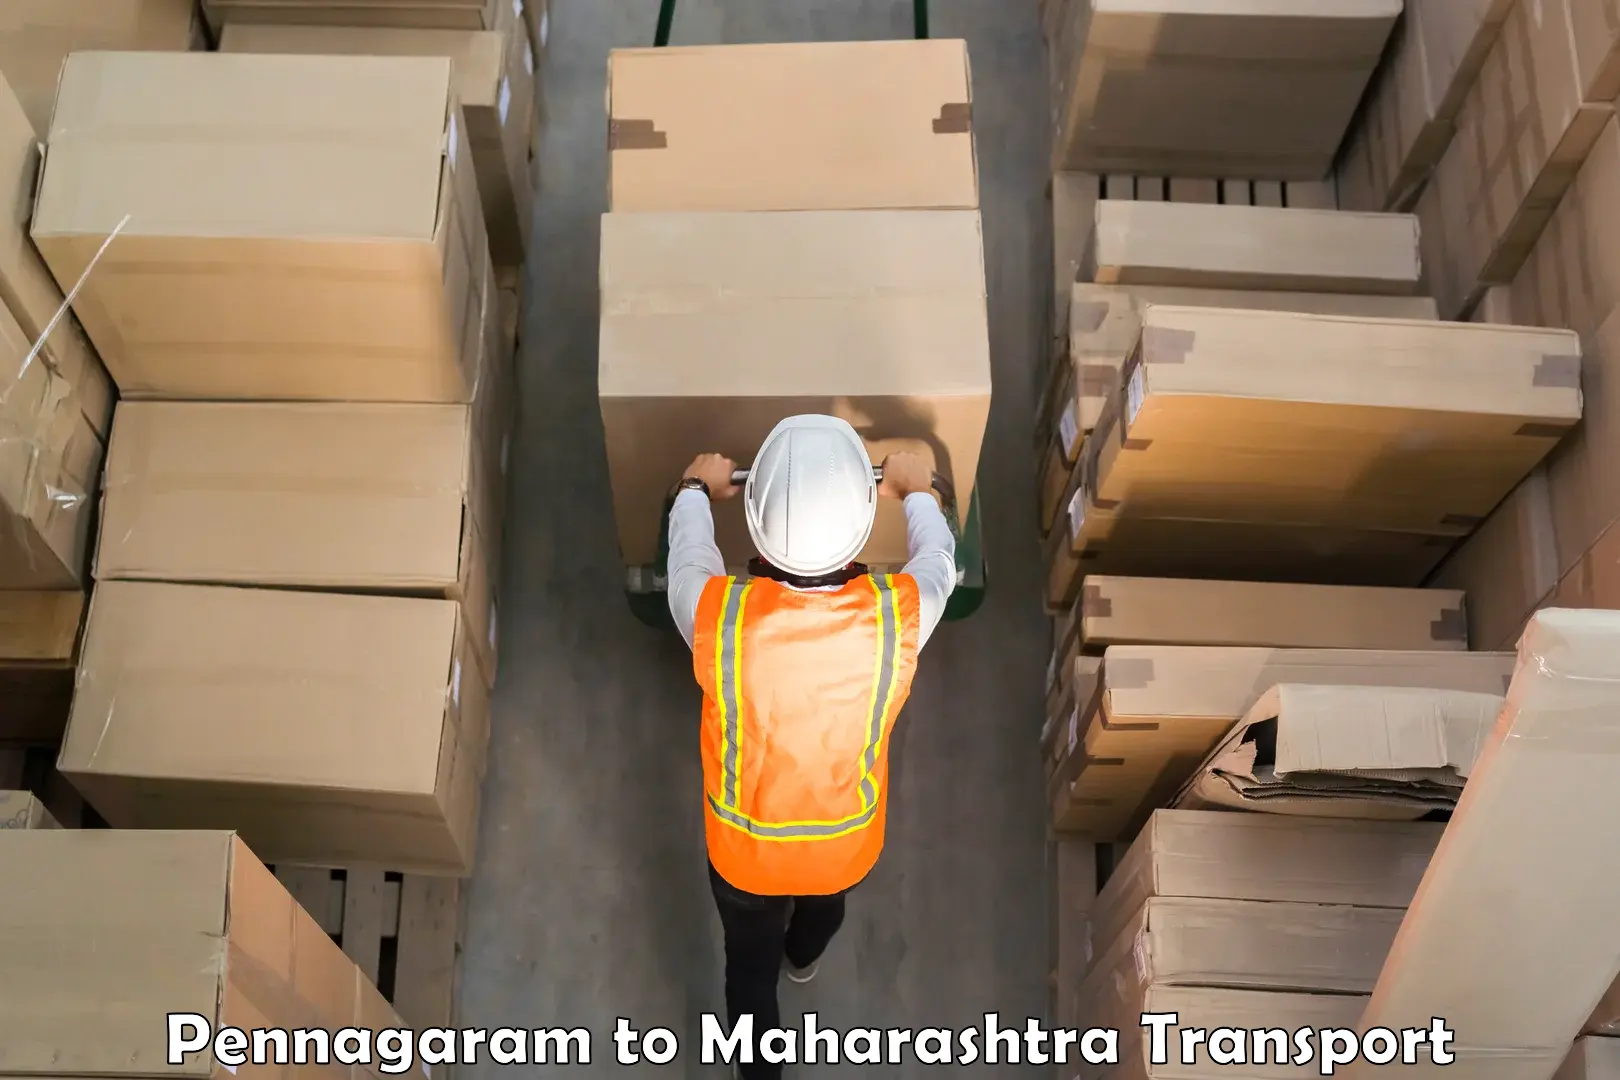 Furniture transport service in Pennagaram to Walchandnagar